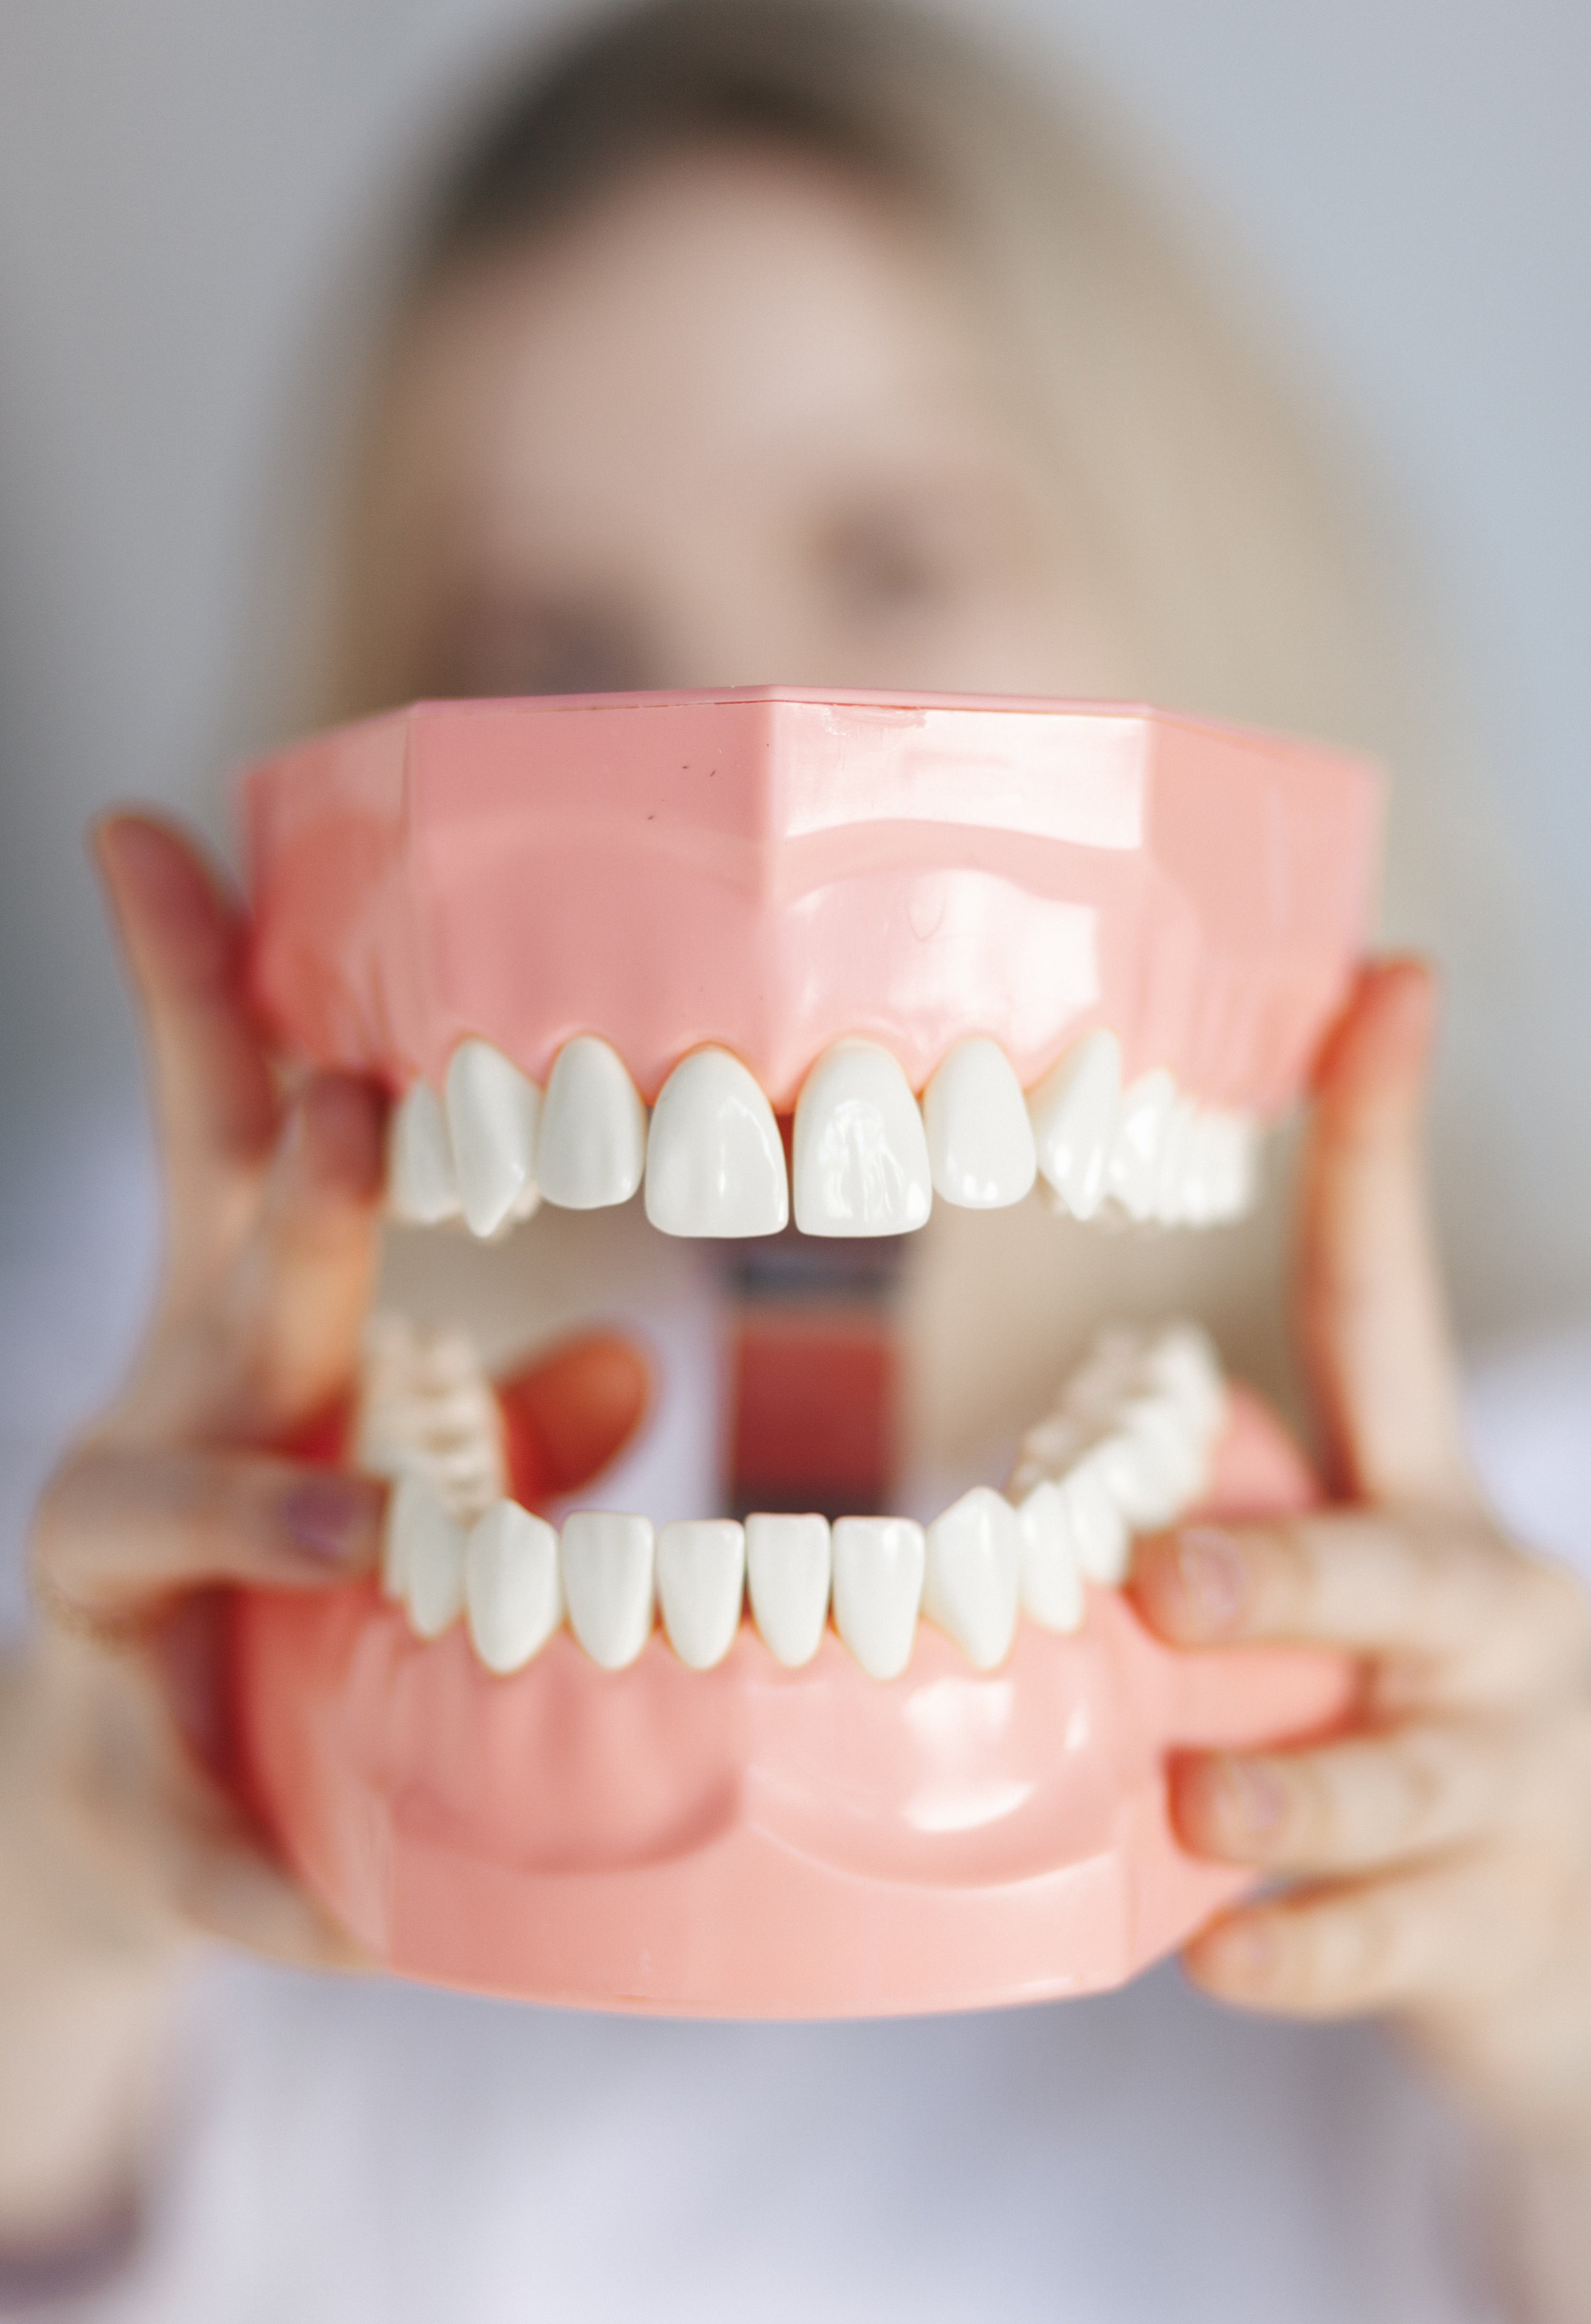 Новая и увлекательная методика гигиены зубов